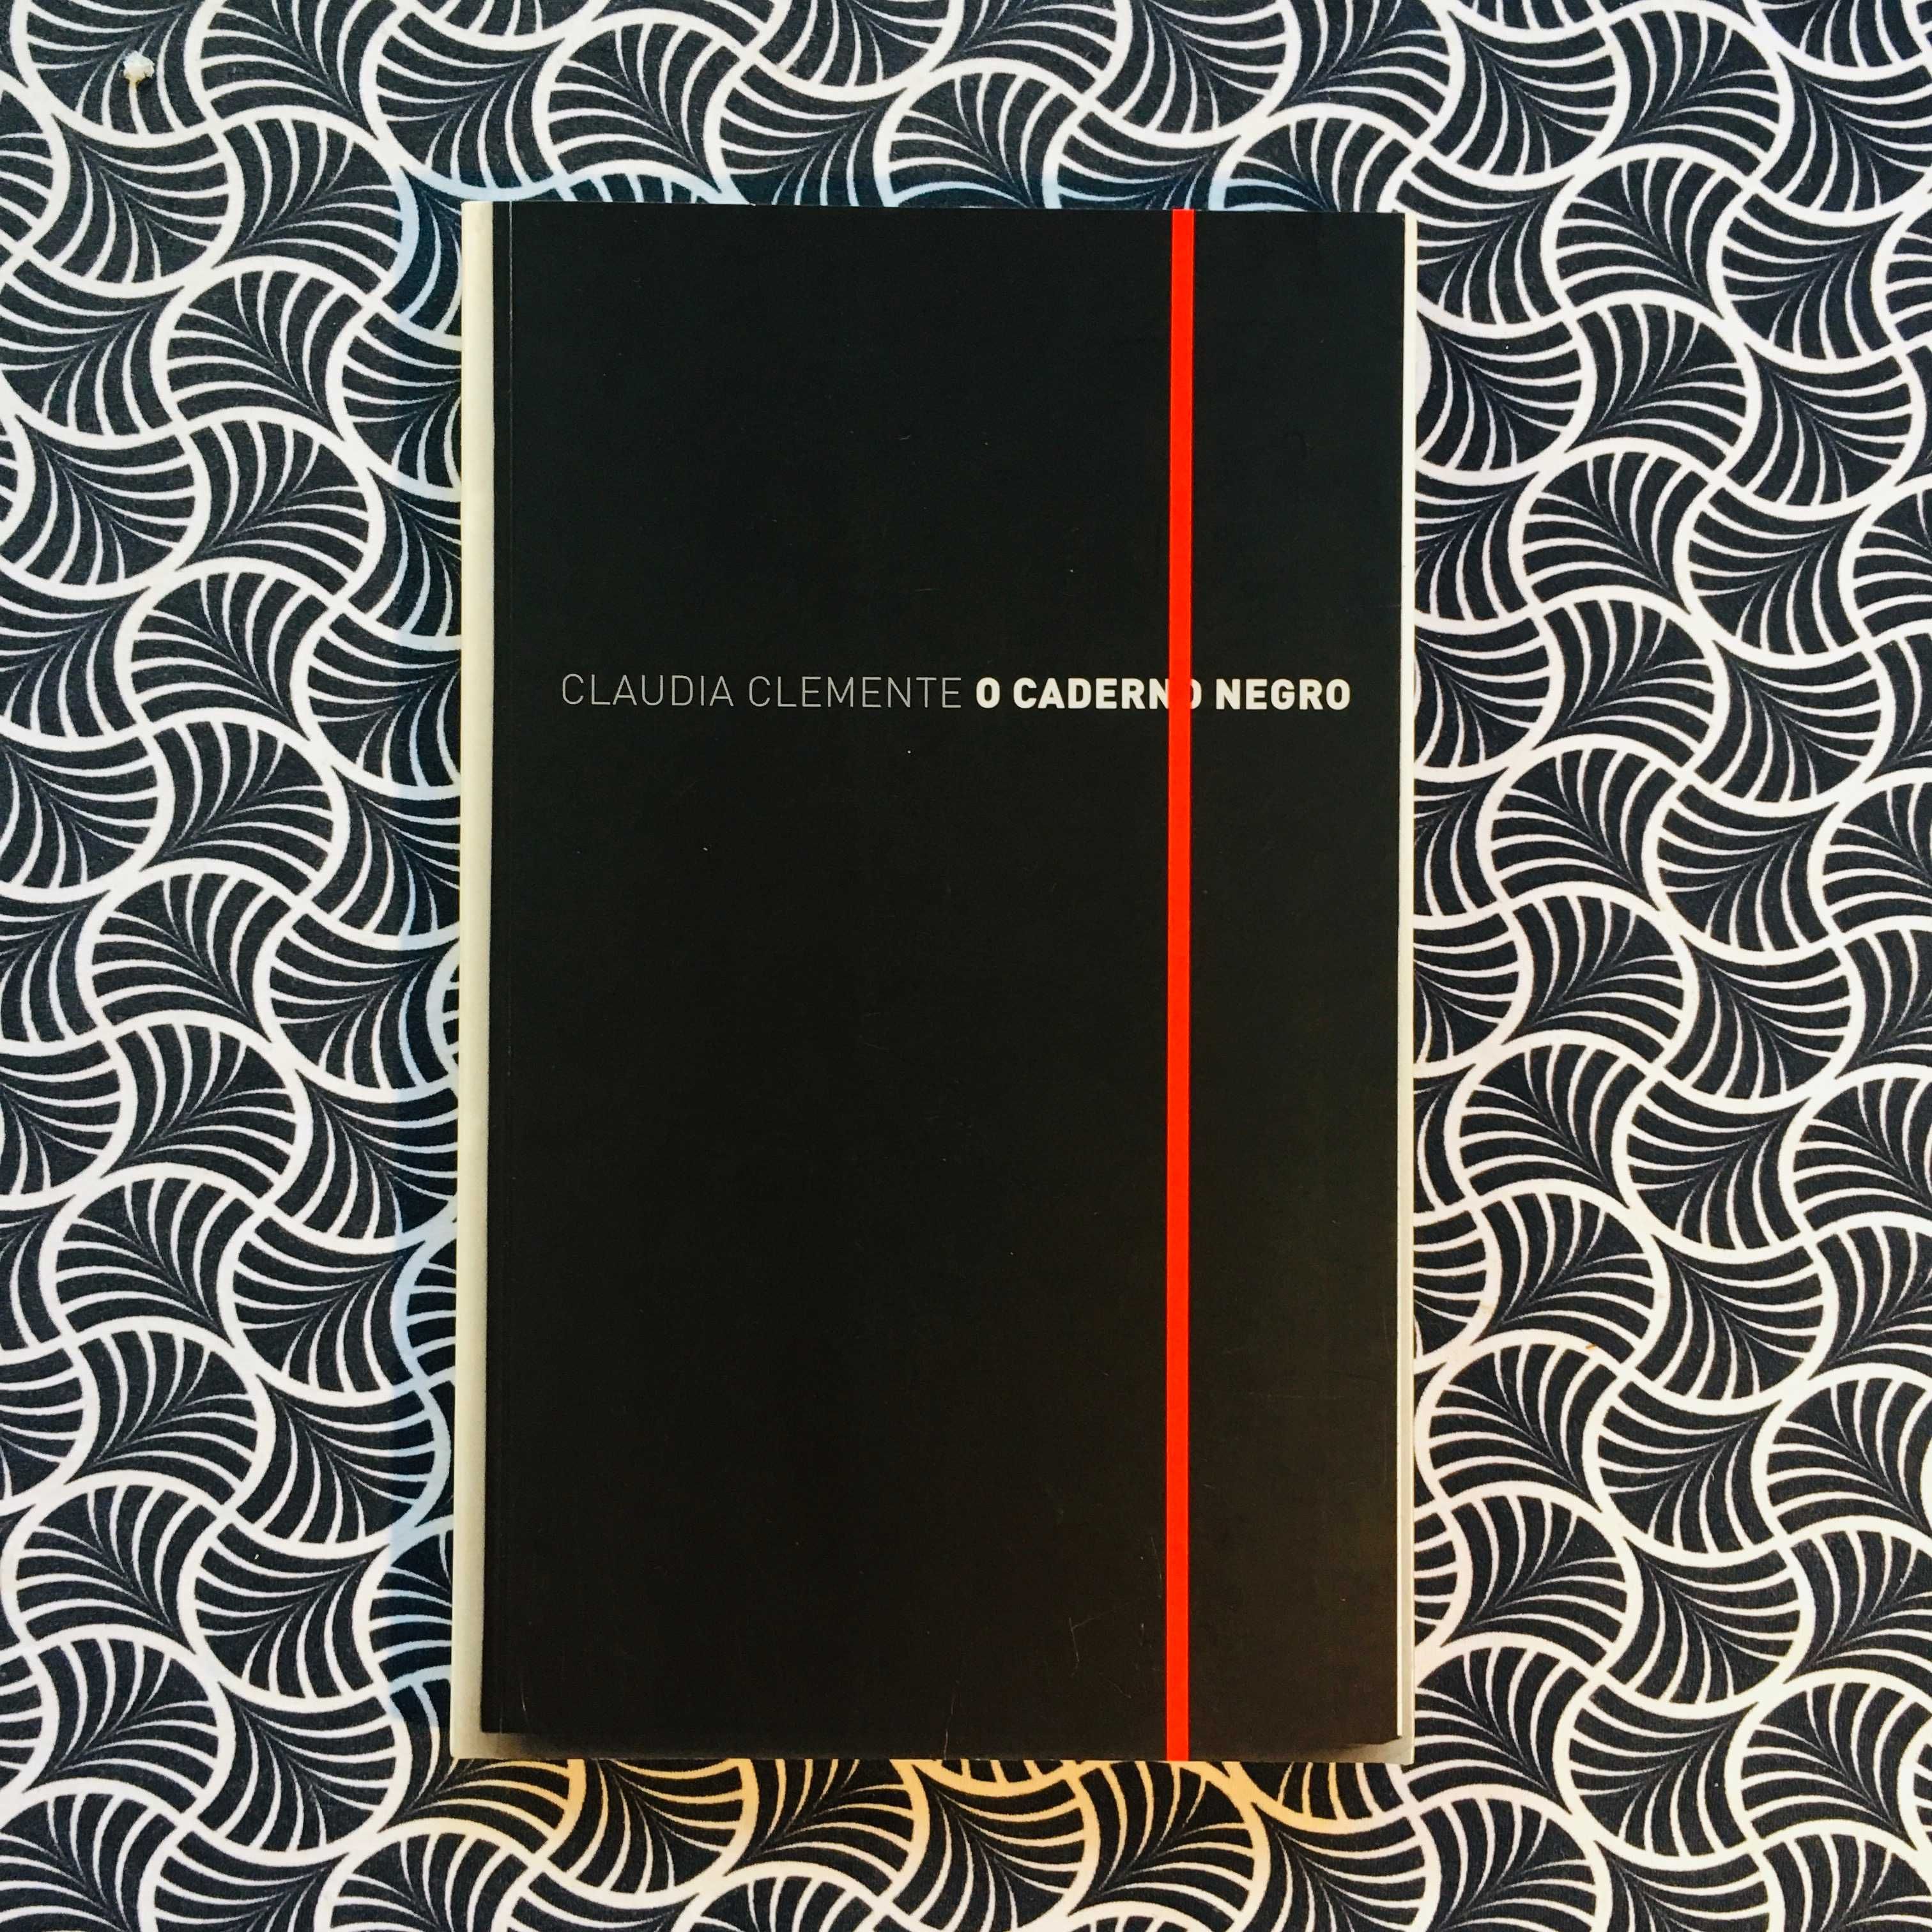 O Caderno Negro - Cláudia Clemente